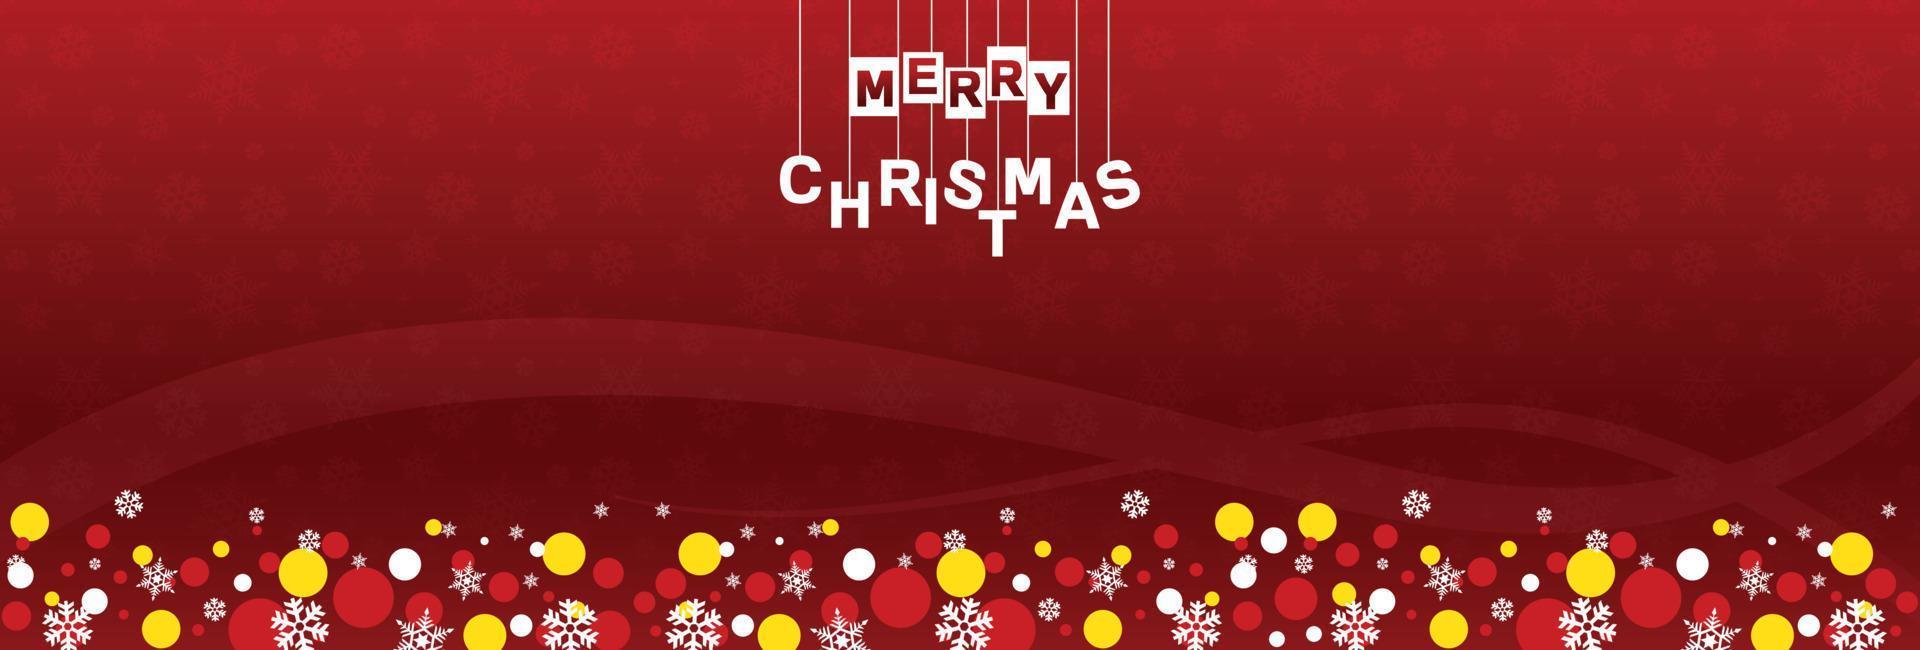 feliz natal modelo de banner da web com luzes cintilantes sobre fundo vermelho, vendas e ofertas vetor